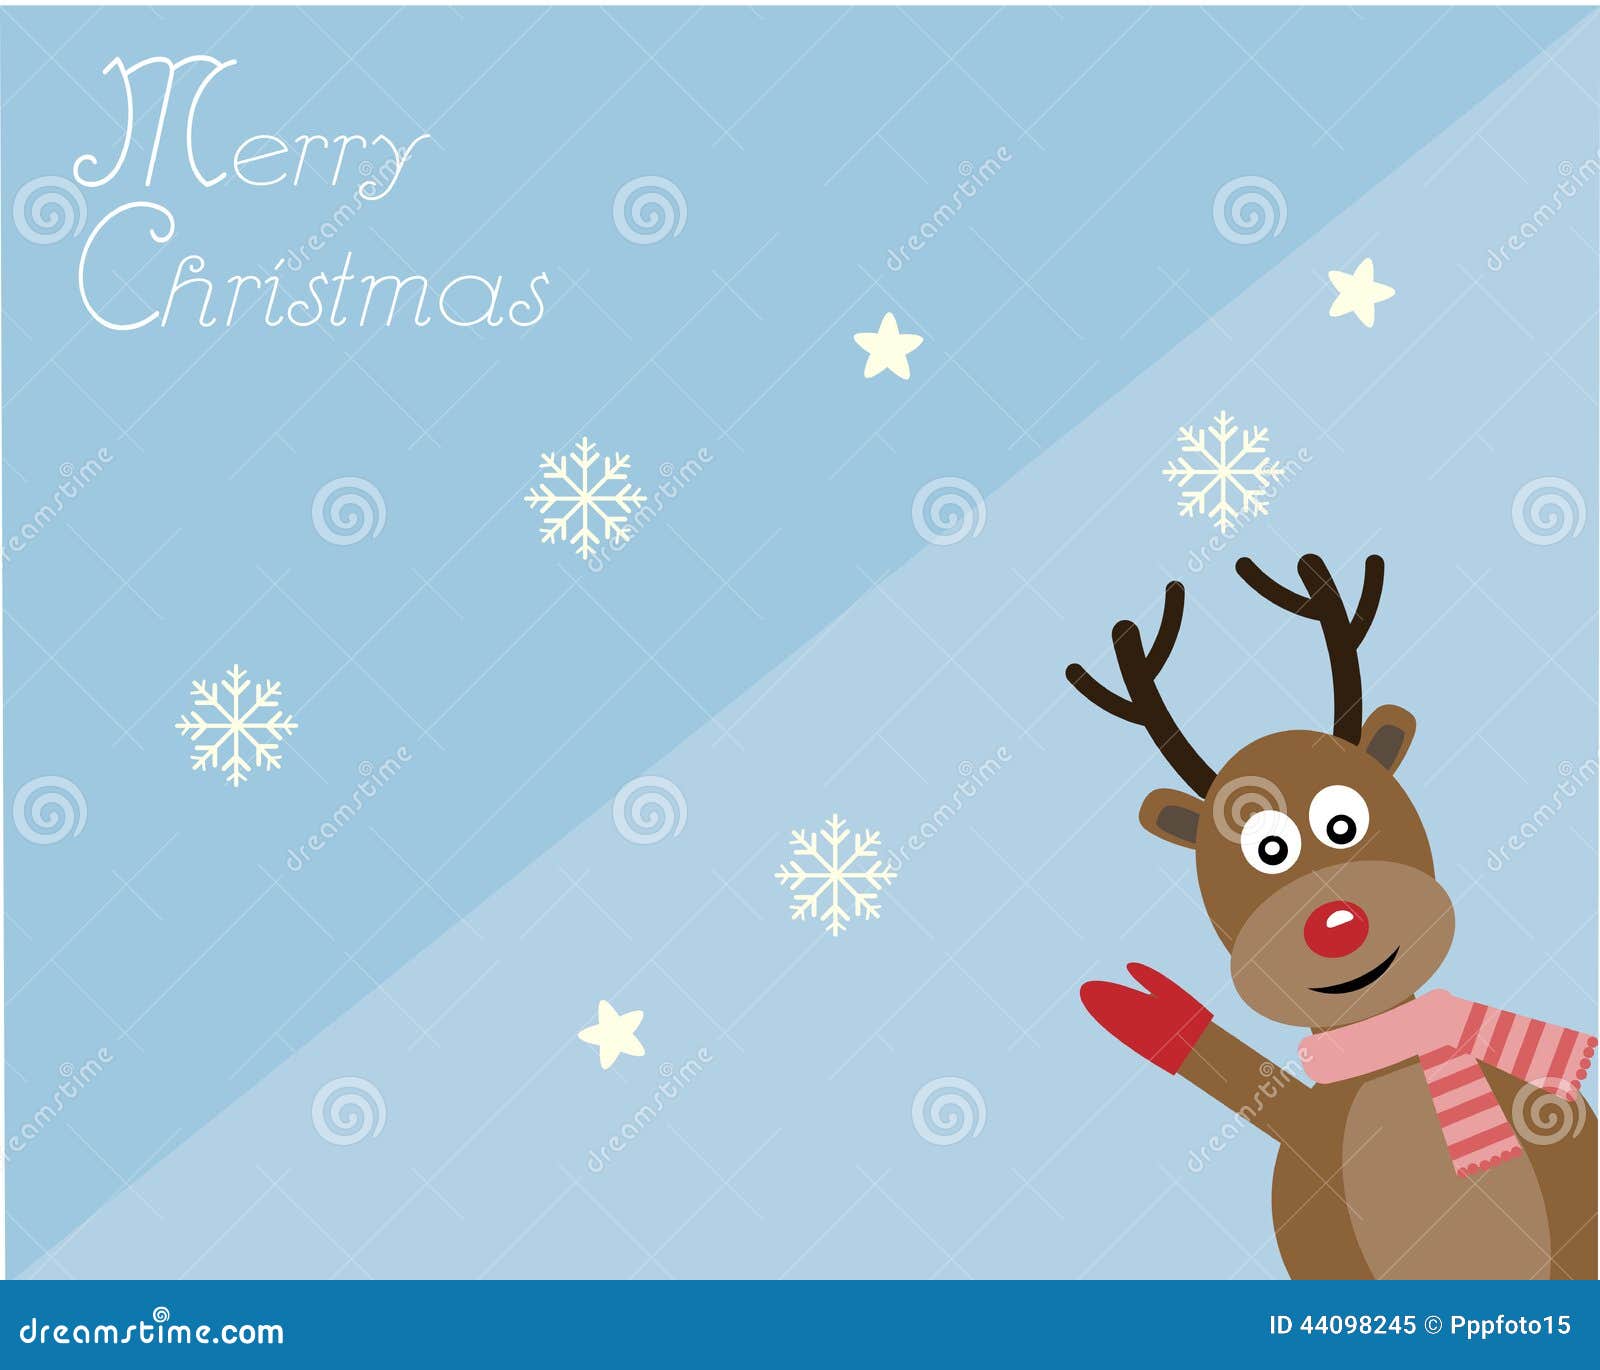 rein deer in merry christmas card